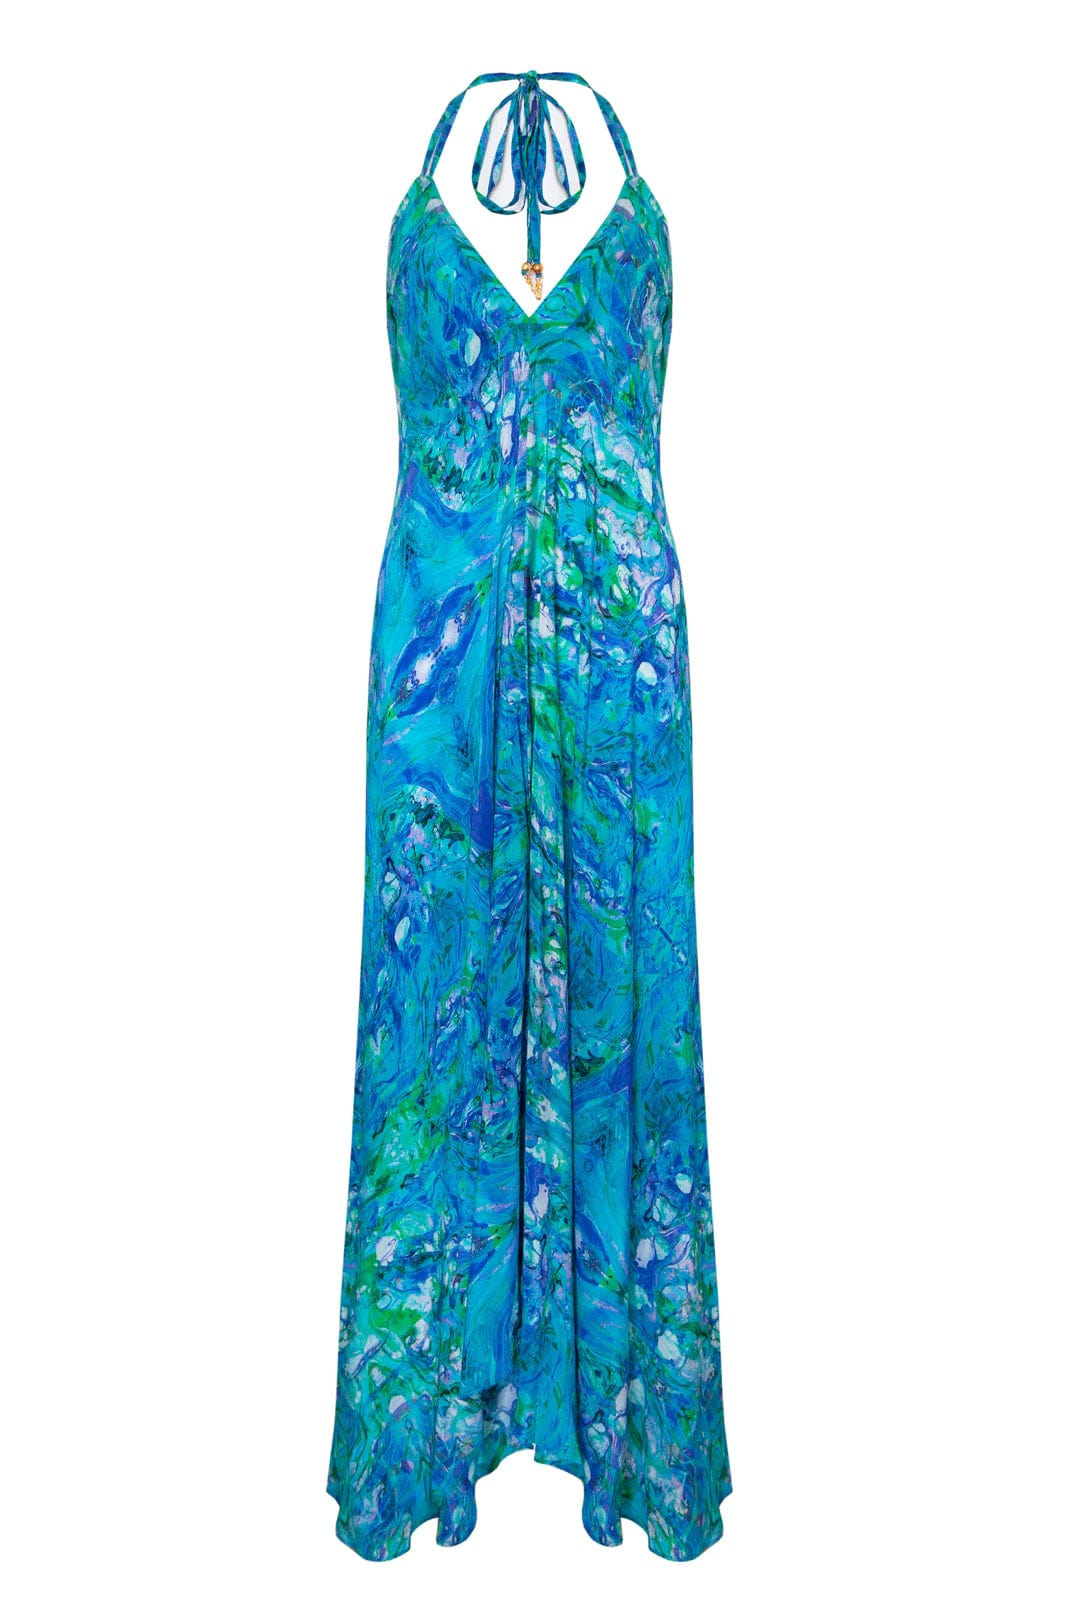 Sophia Alexia ONE SIZE Turquoise Glow Silk Ibiza Dress